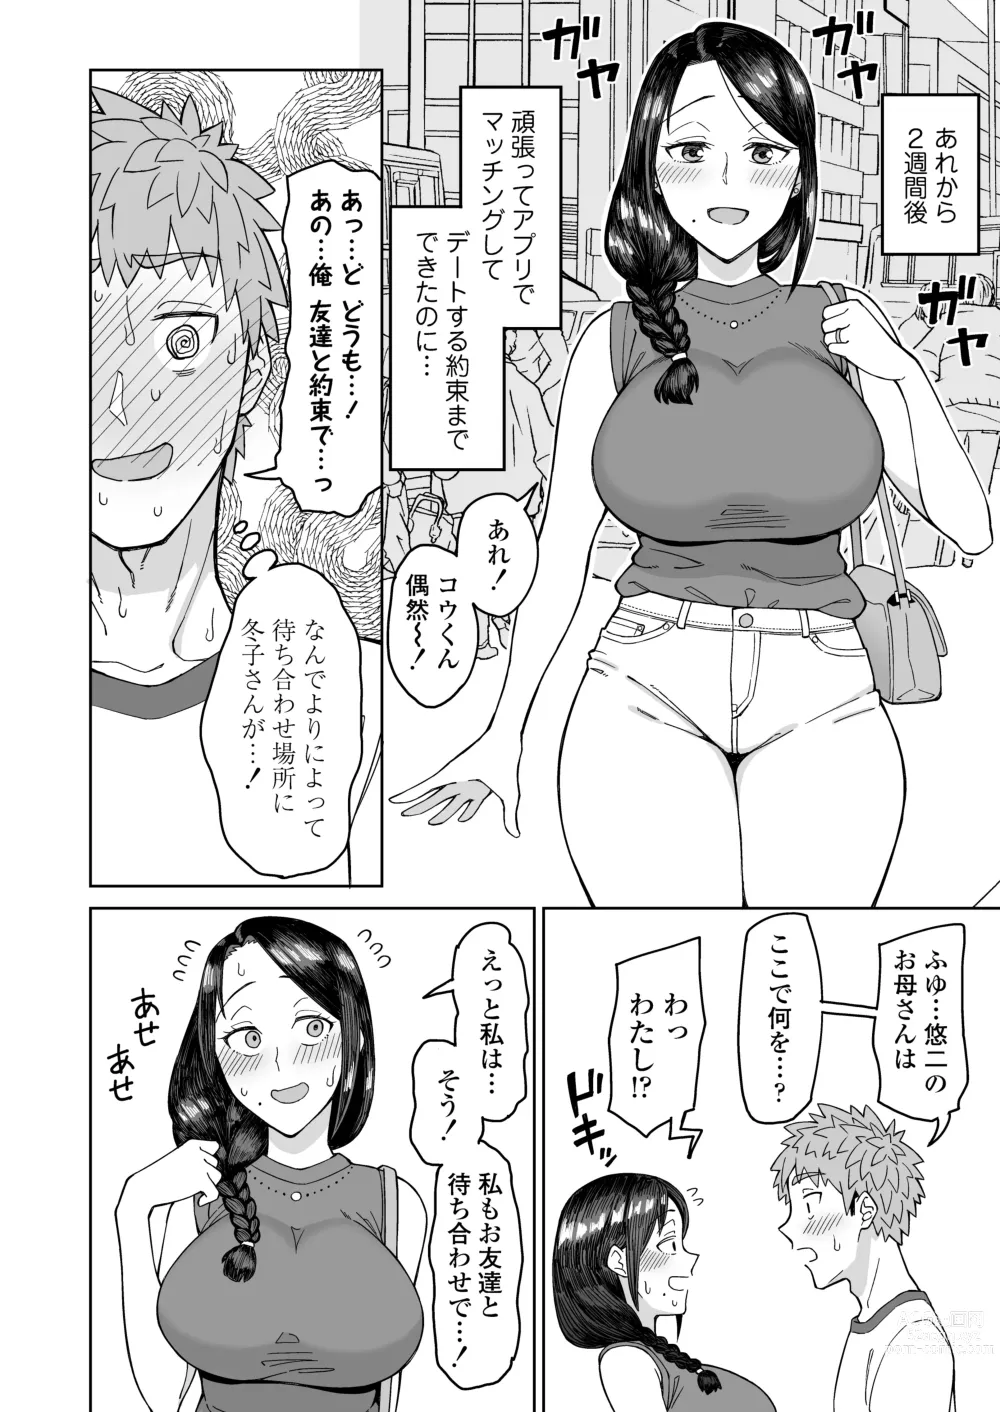 Page 5 of doujinshi Hatsukoi no Hito wa, Tomodachi no Mama.